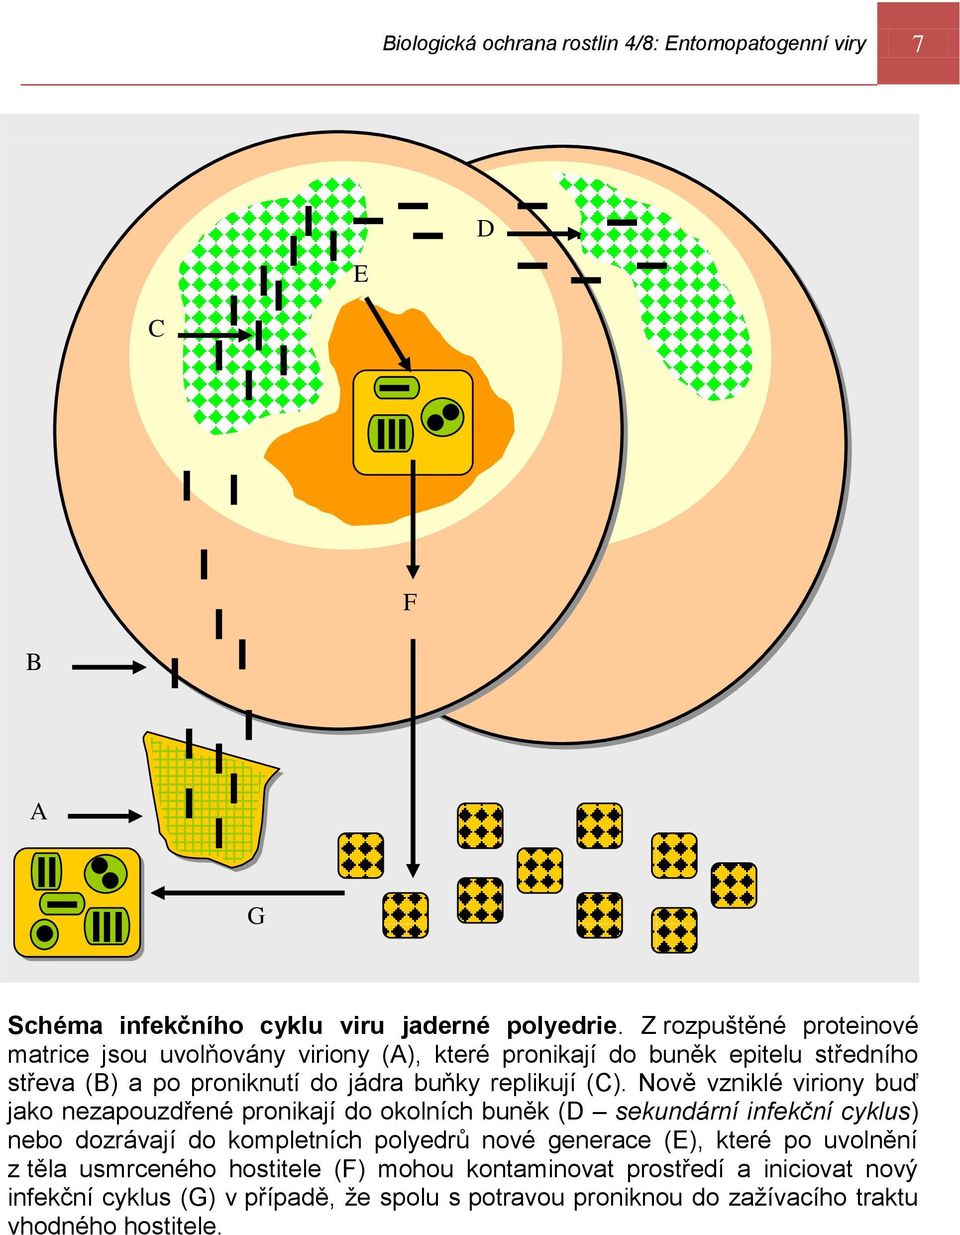 (C). Nově vzniklé viriony buď jako nezapouzdřené pronikají do okolních buněk (D sekundární infekční cyklus) nebo dozrávají do kompletních polyedrů nové